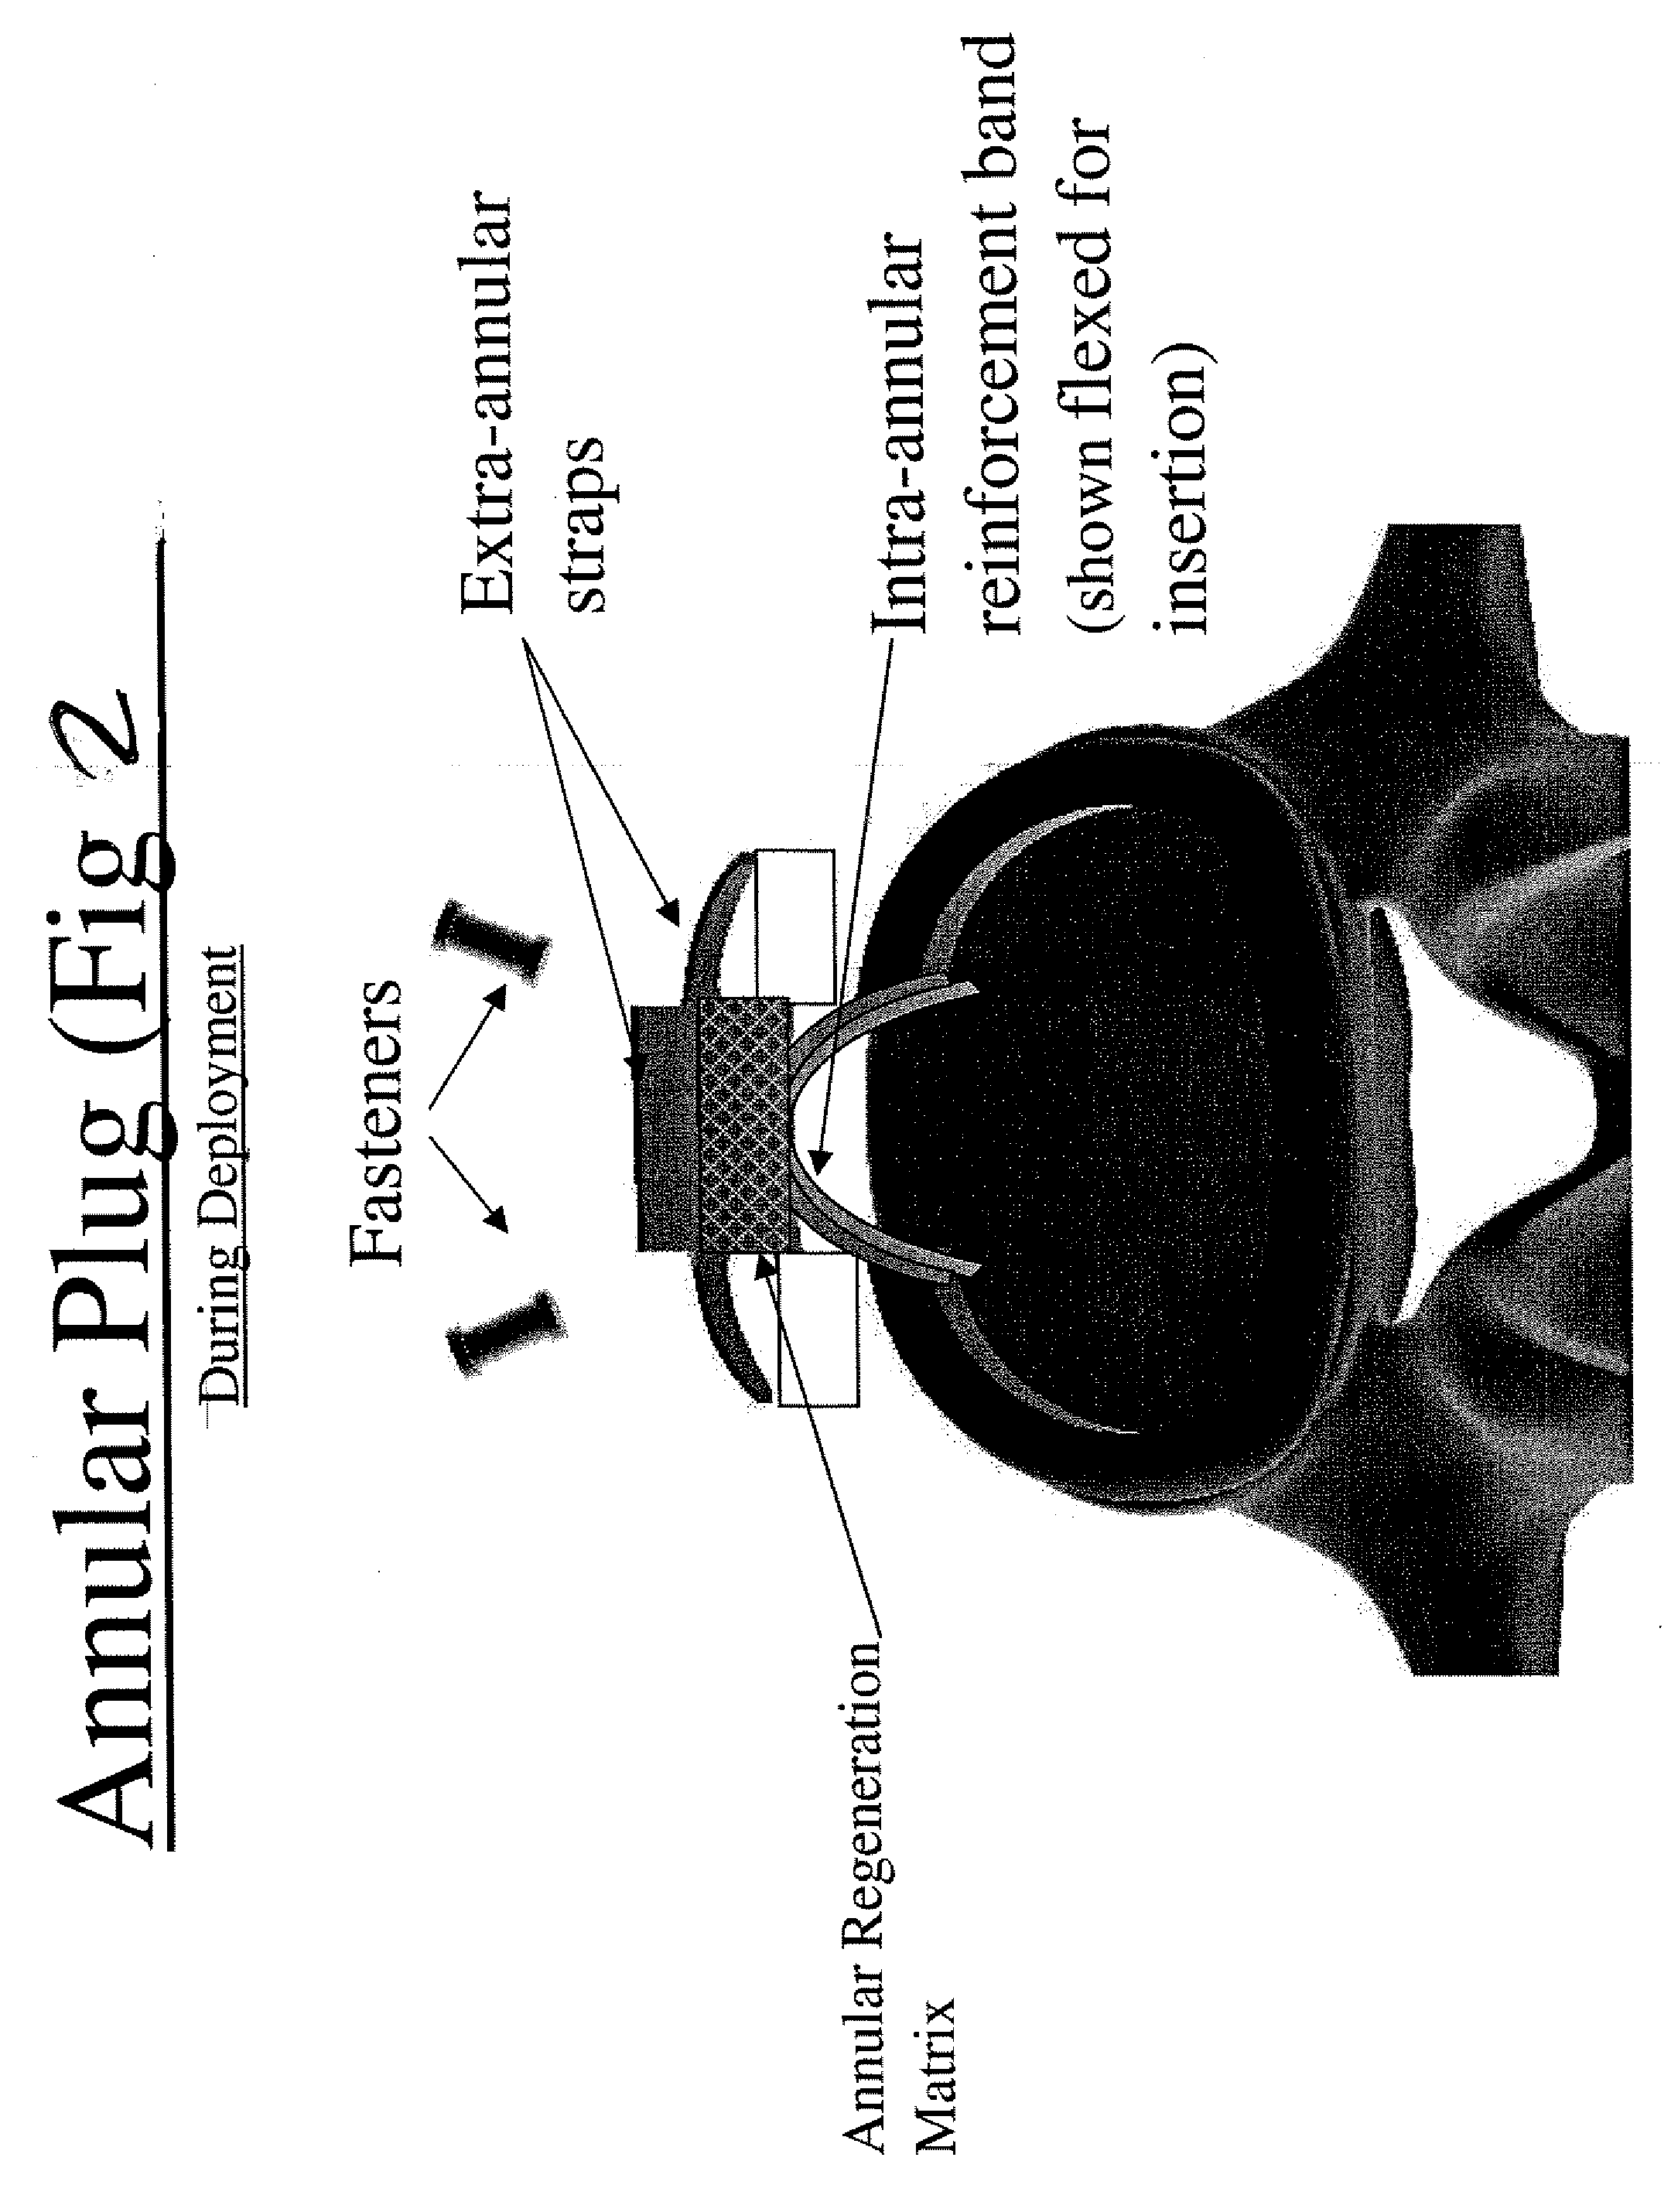 Annulus fibrosus repair devices and techniques